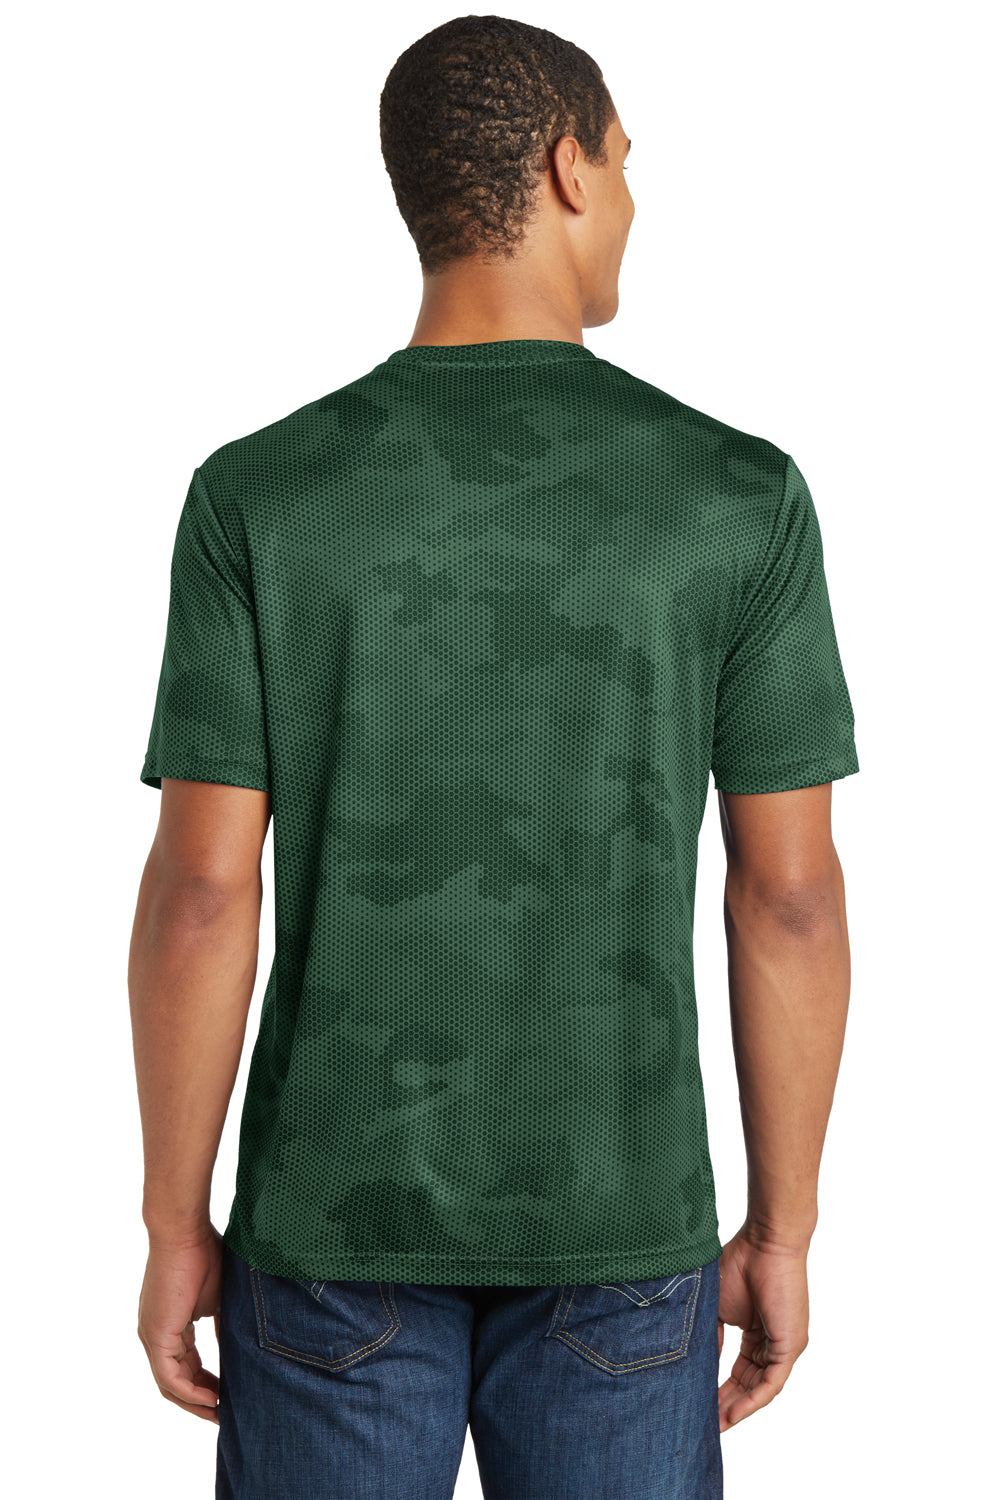 Sport-Tek ST370 Mens CamoHex Moisture Wicking Short Sleeve Crewneck T-Shirt Forest Green Back